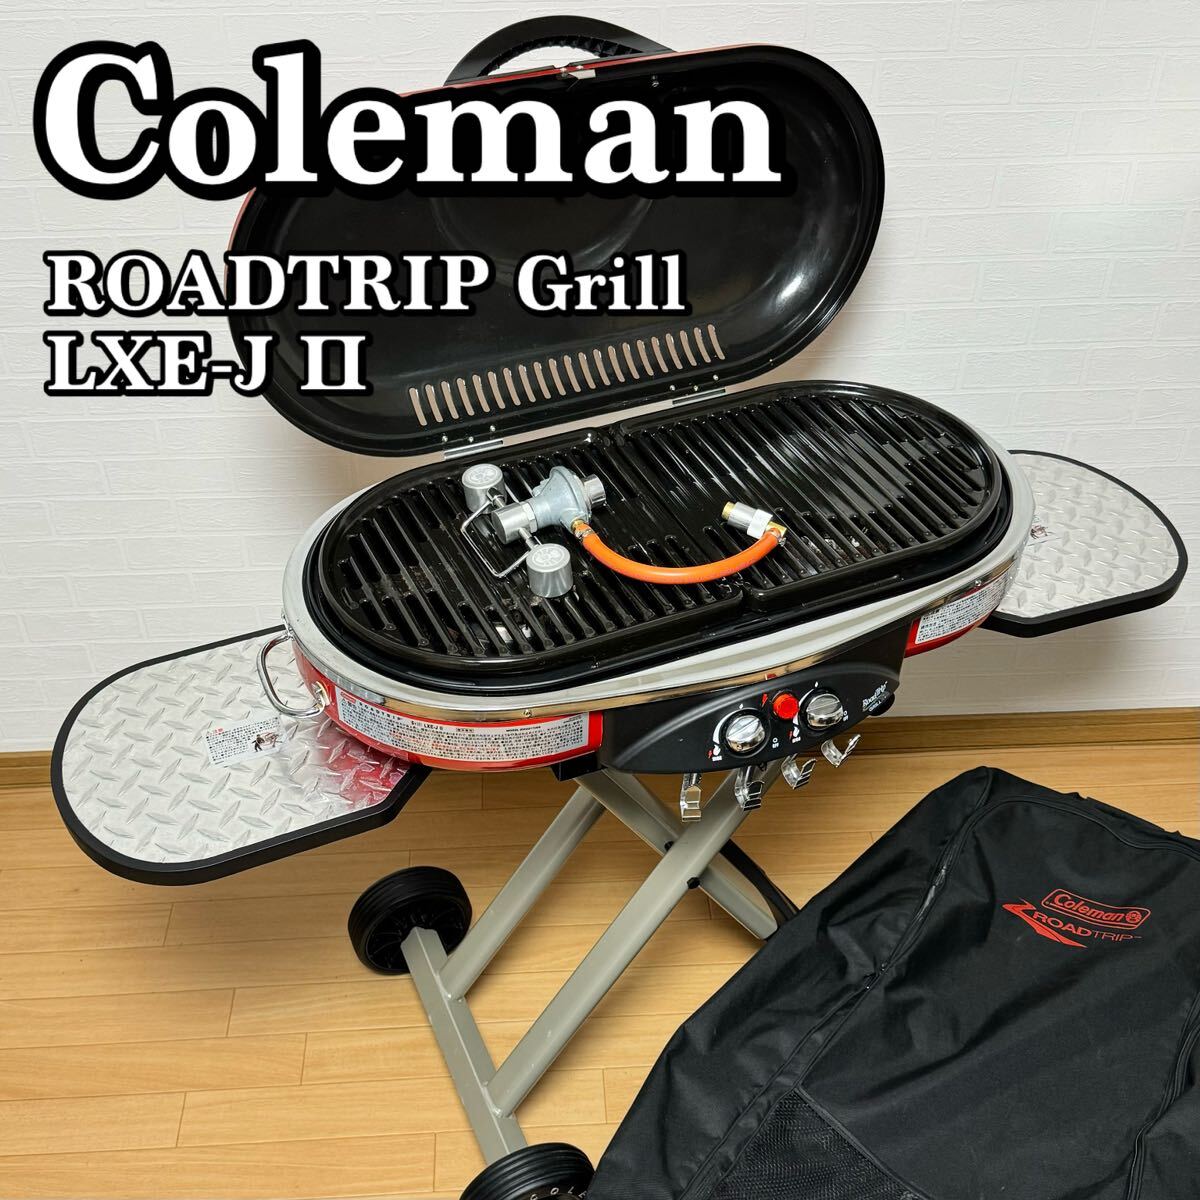 Coleman コールマン ロードトリップグリル ROADTRIP Grill LXE-JⅡ LXE-J2 2000017066 ガスバーベキューグリル キャリーケース付属 BBQ